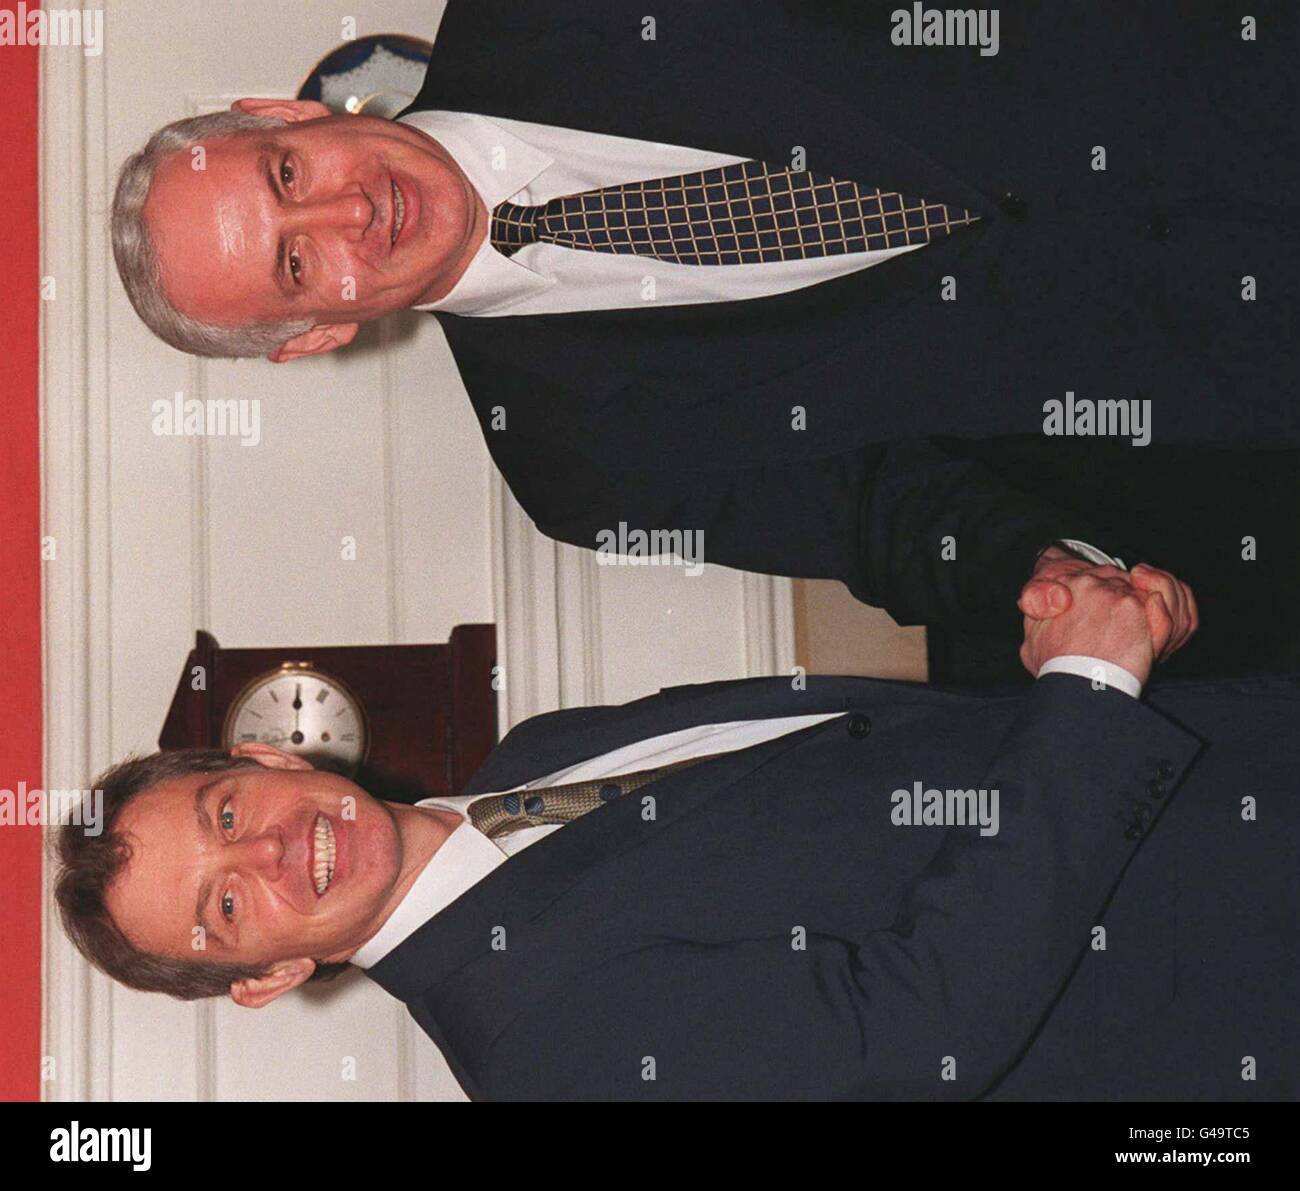 Der israelische Ministerpräsident Benjamin Netanyahu, Recht, wird begrüßt von Premierminister Tony Blair heute (Donnerstag) wie kam er zu Gesprächen in keine 10 Downing Street, London. Netanjahu ist zu einem offiziellen Besuch nach Großbritannien. (WPA ROTA). Stockfoto